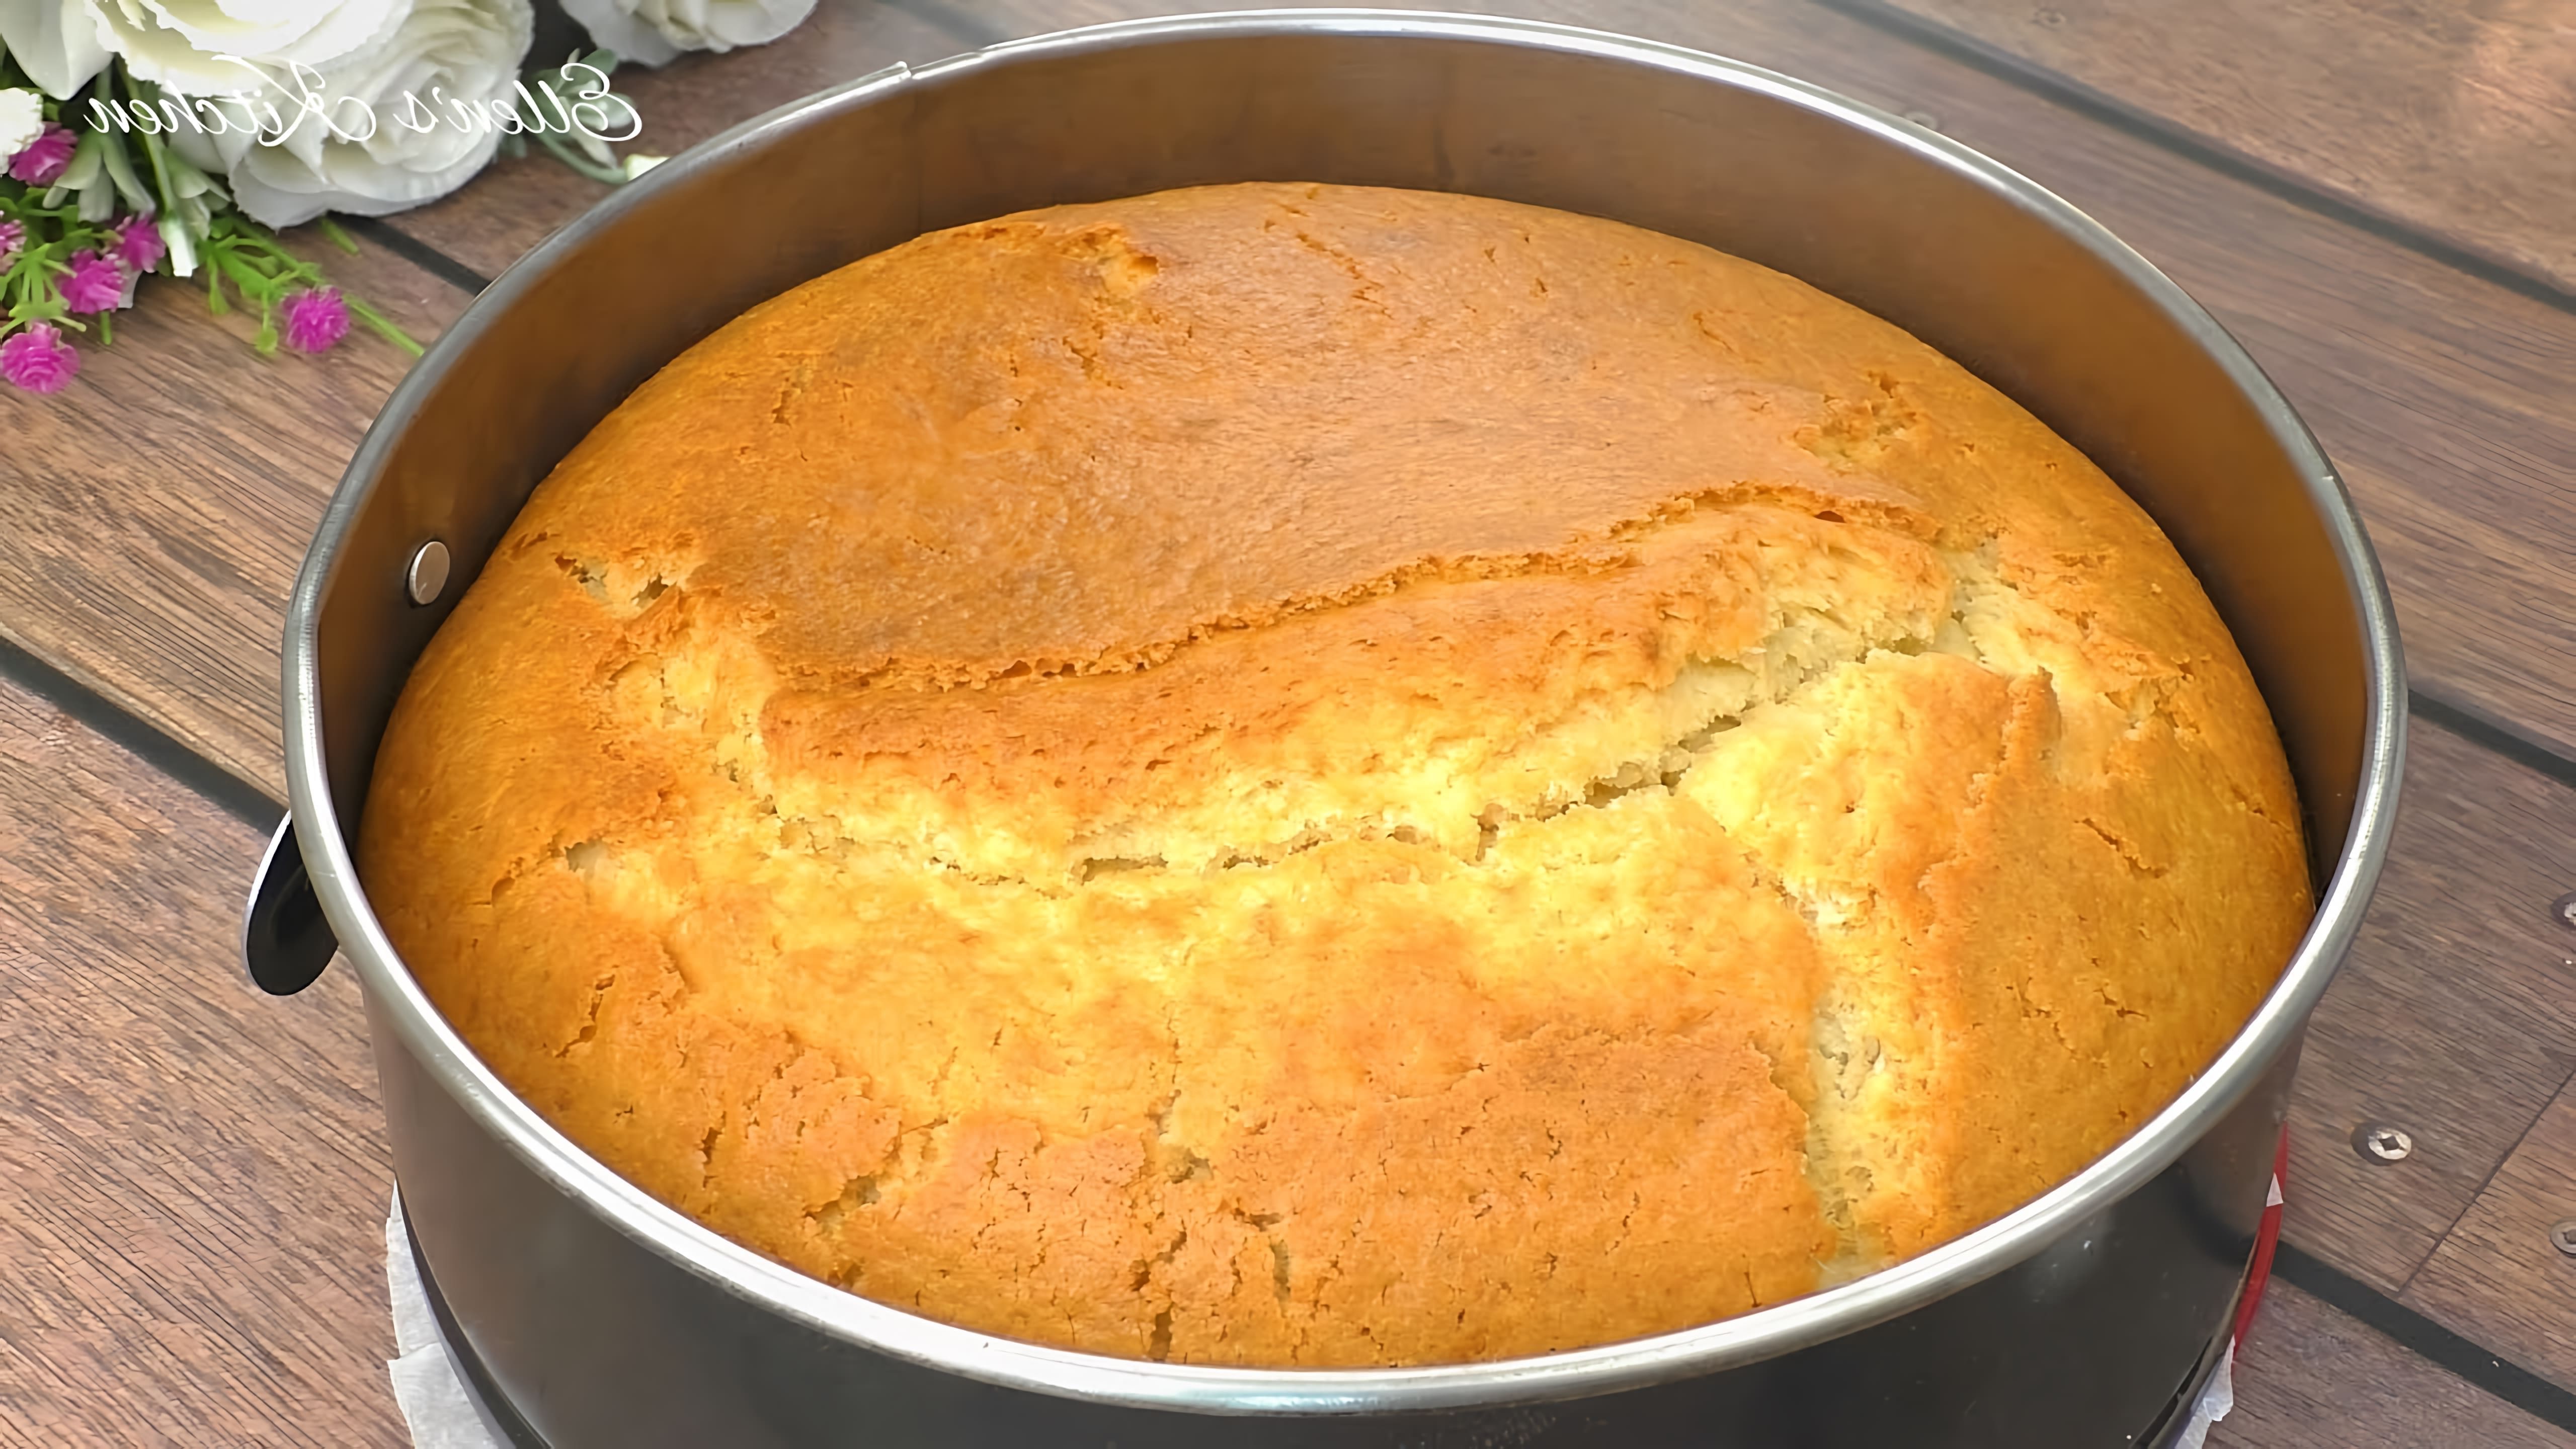 В этом видео демонстрируется рецепт приготовления торта за 5 минут